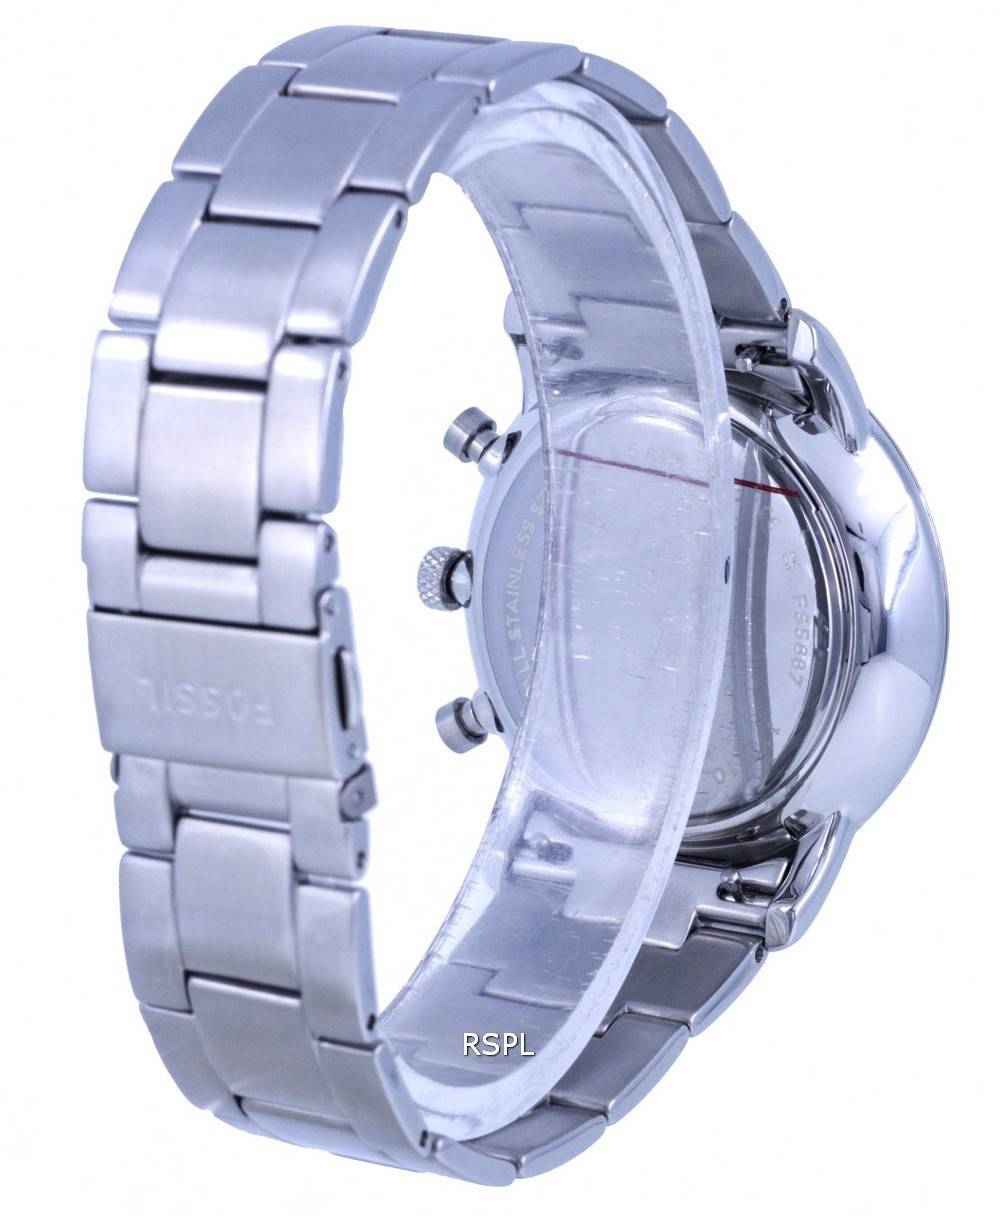 Fossil FS2905 Wrist Watch for Men for sale online | eBay